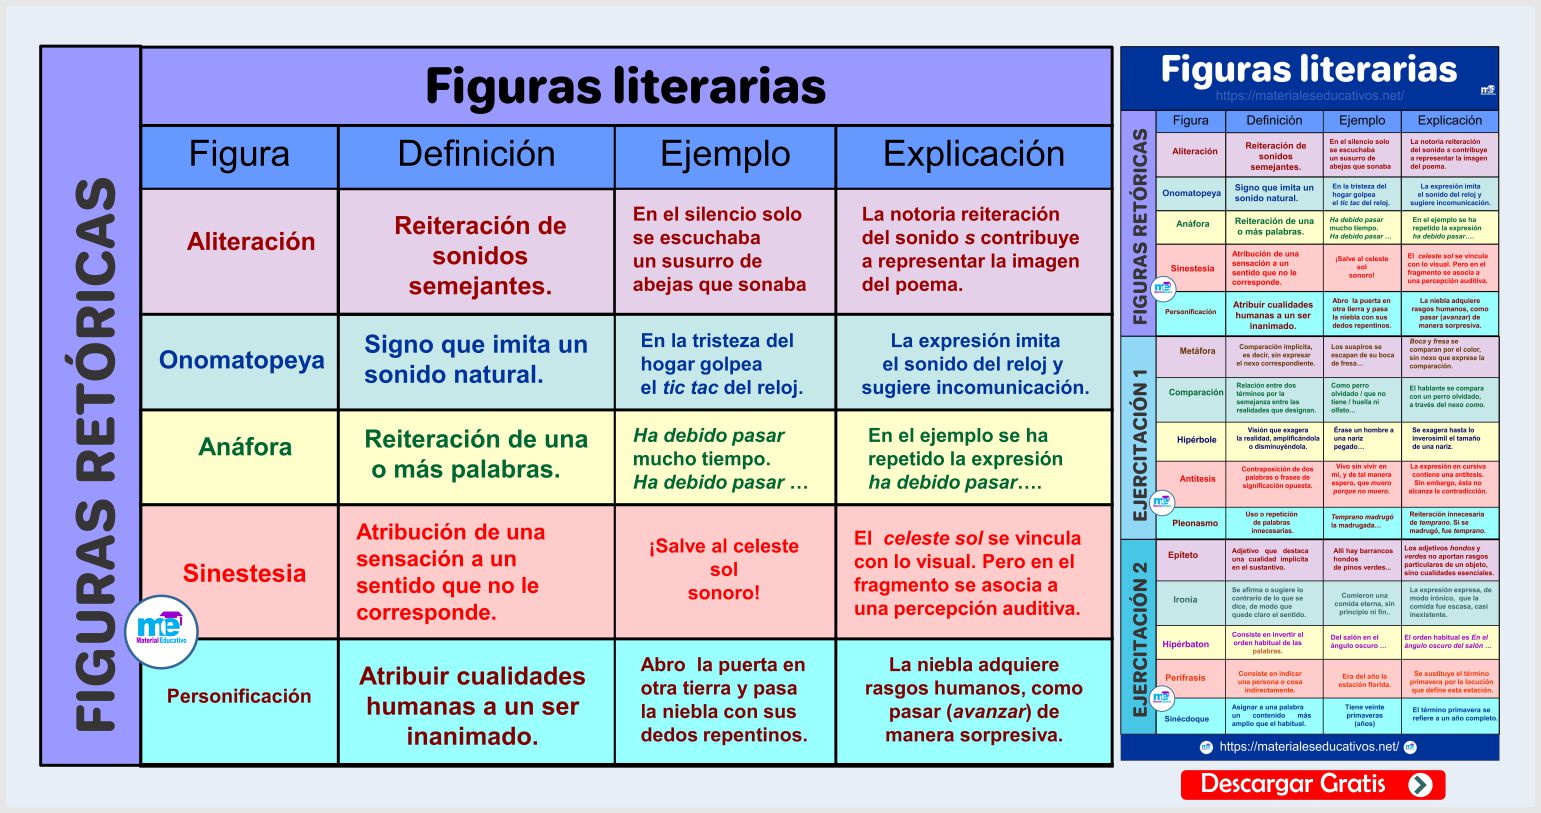 CLASIFICACIÓN DE LAS FIGURAS LITERARIAS